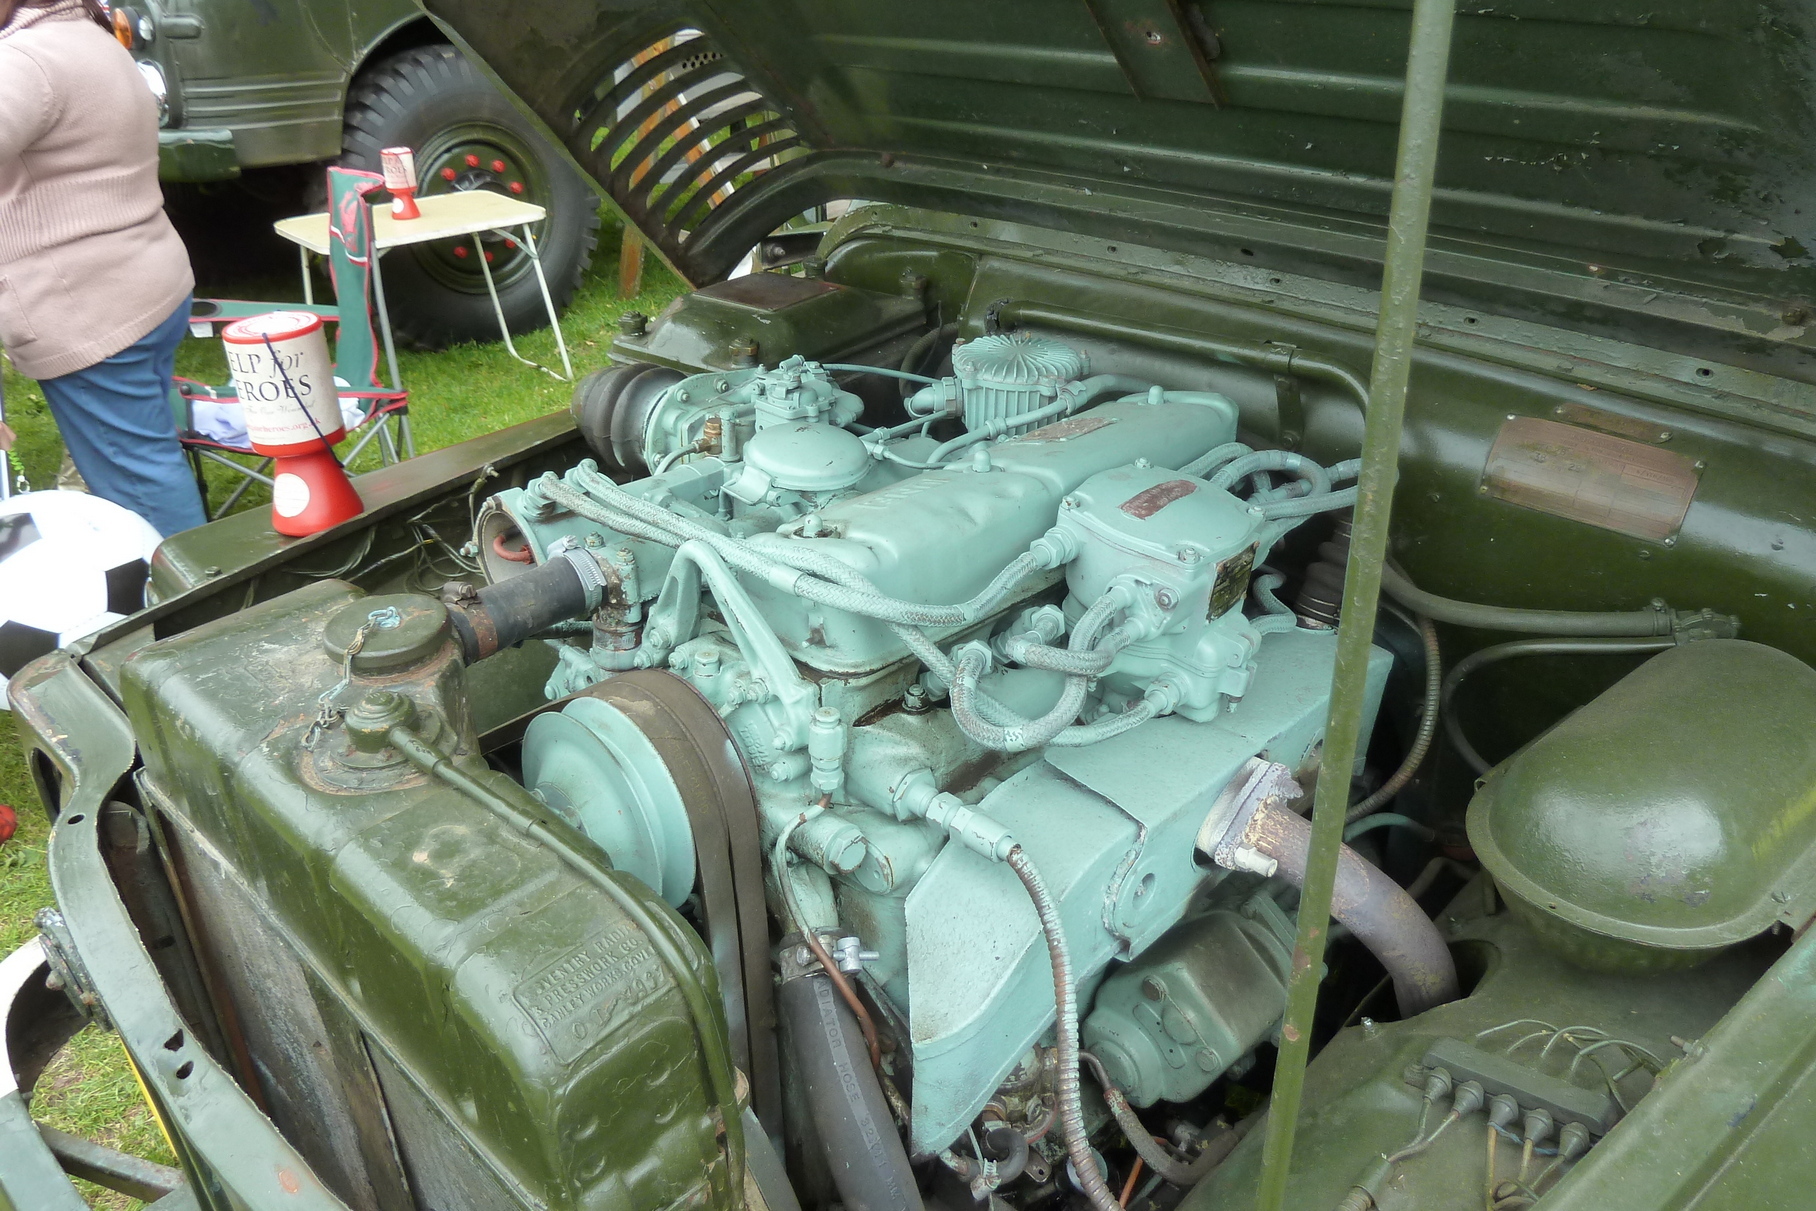 Четырёхцилиндровый двигатель Rolls-Royce B40 объёмом 2,8 литра развивал максимальные 200 Нм всего при 1750 оборотах в минуту